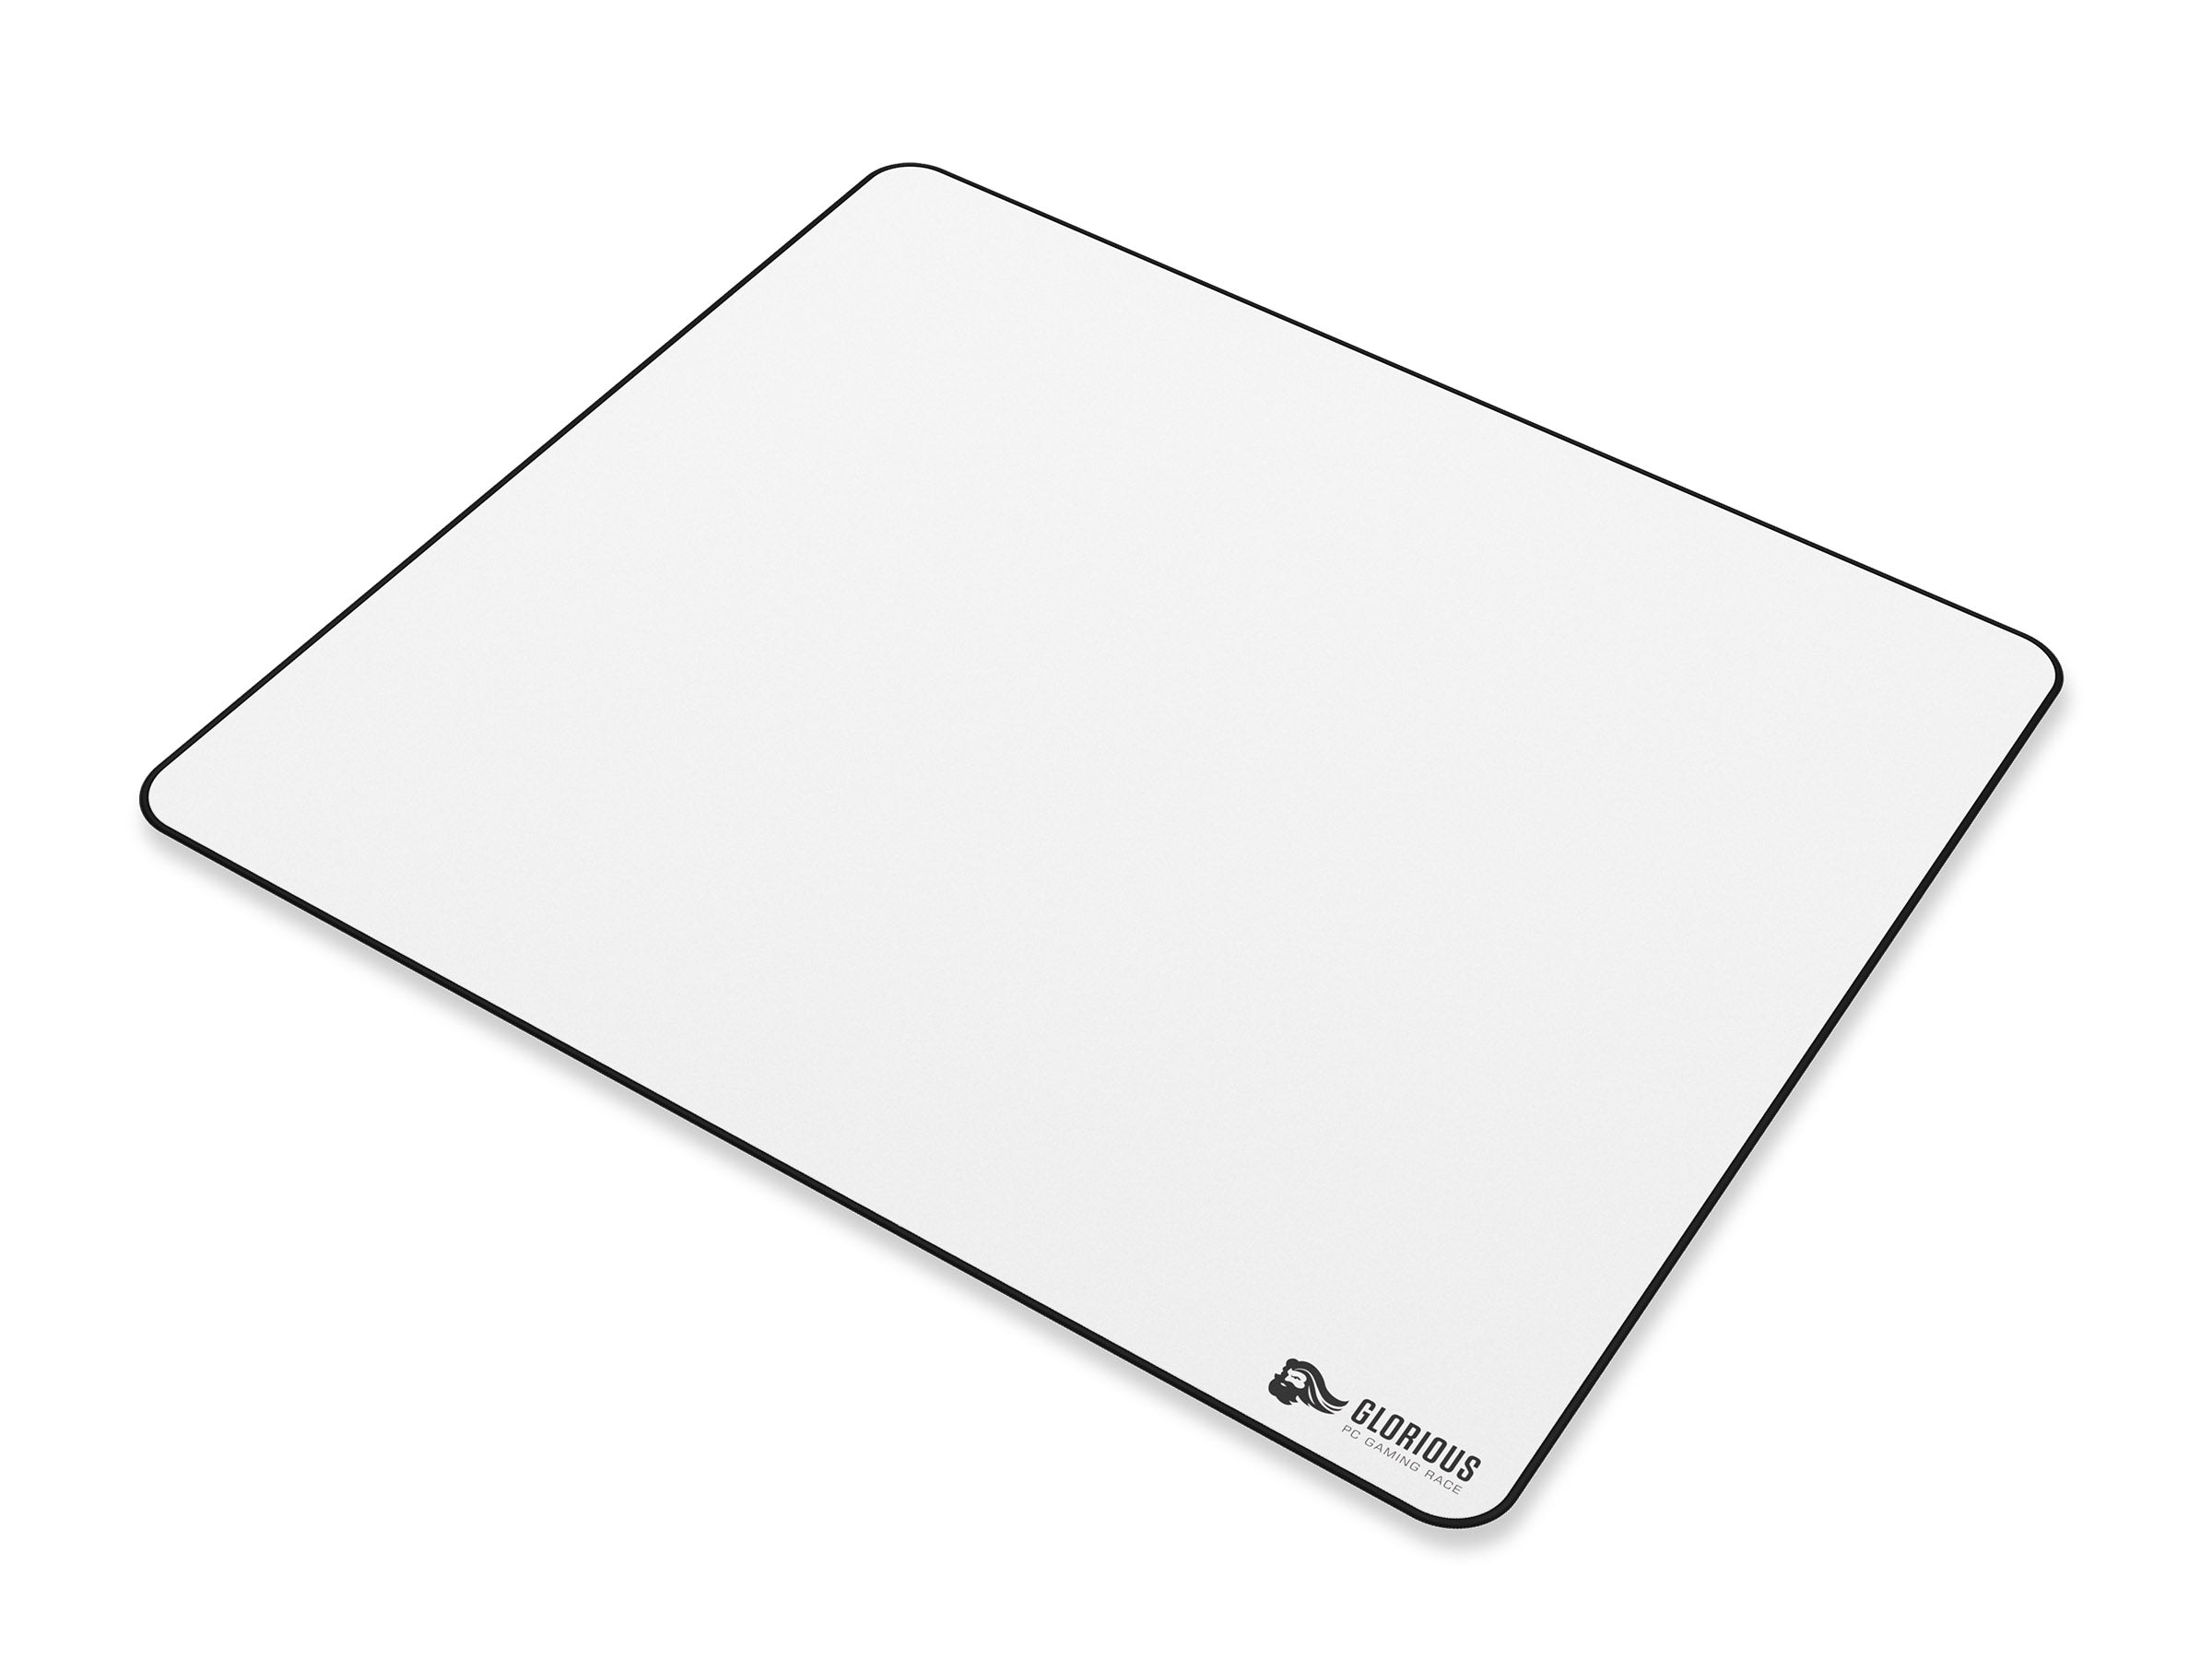 Glorious PC Heavy XL White Desk / Mouse Pad MKC77YO3LR |27437|